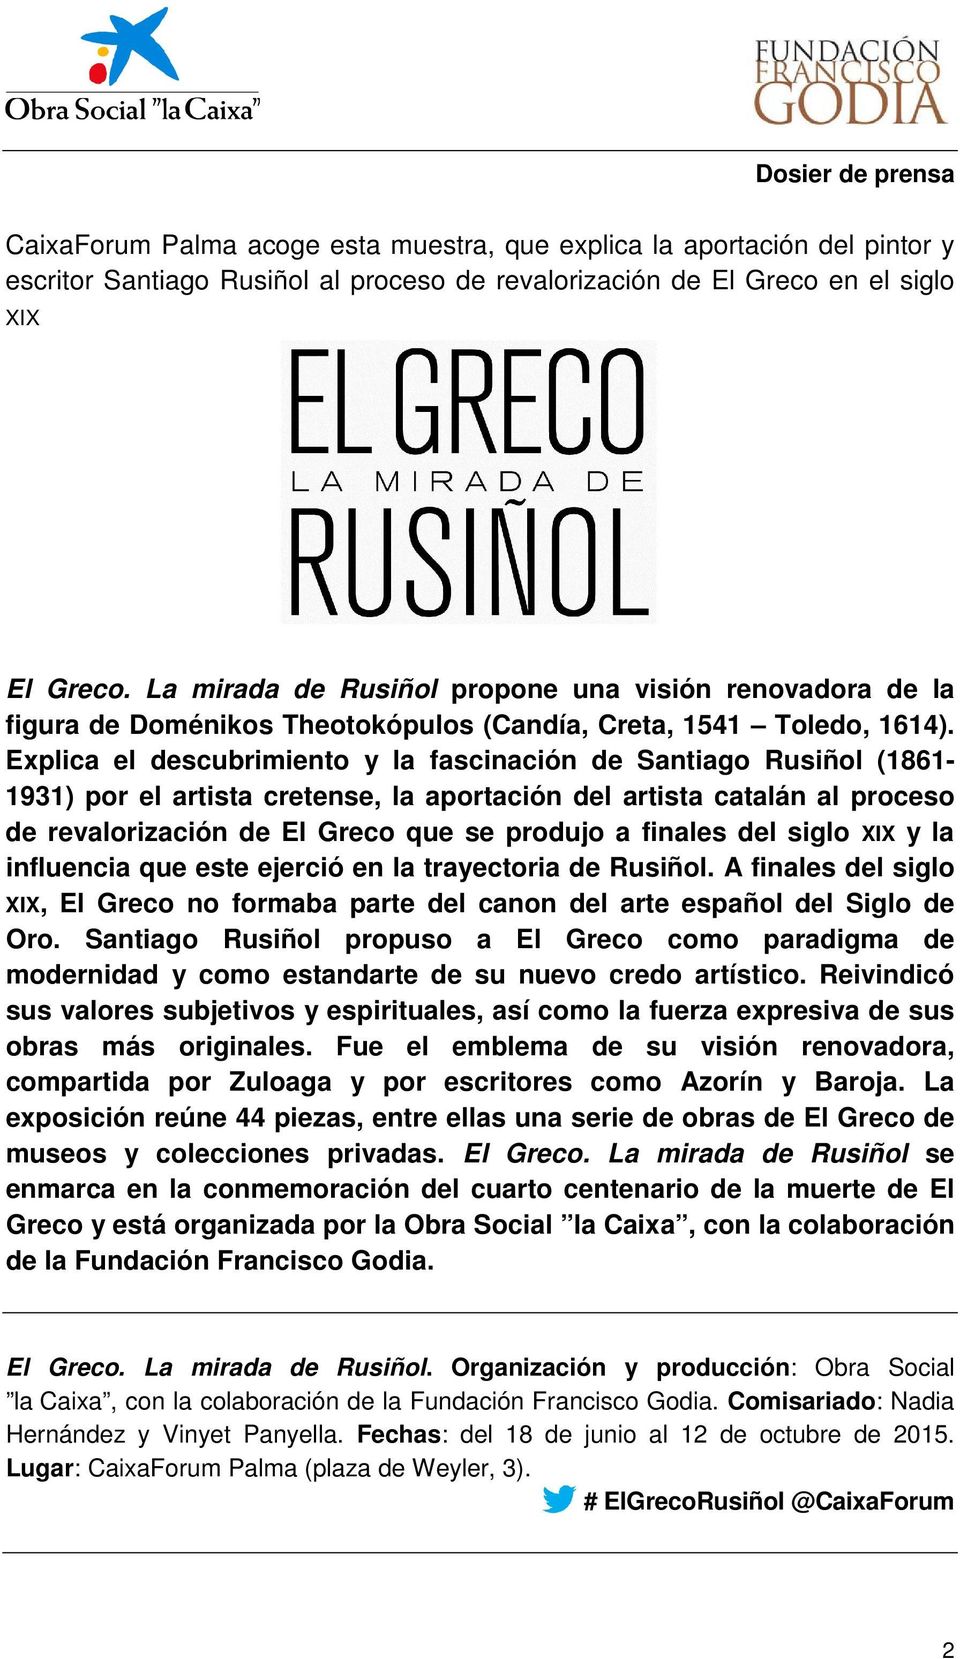 Explica el descubrimiento y la fascinación de Santiago Rusiñol (1861-1931) por el artista cretense, la aportación del artista catalán al proceso de revalorización de El Greco que se produjo a finales